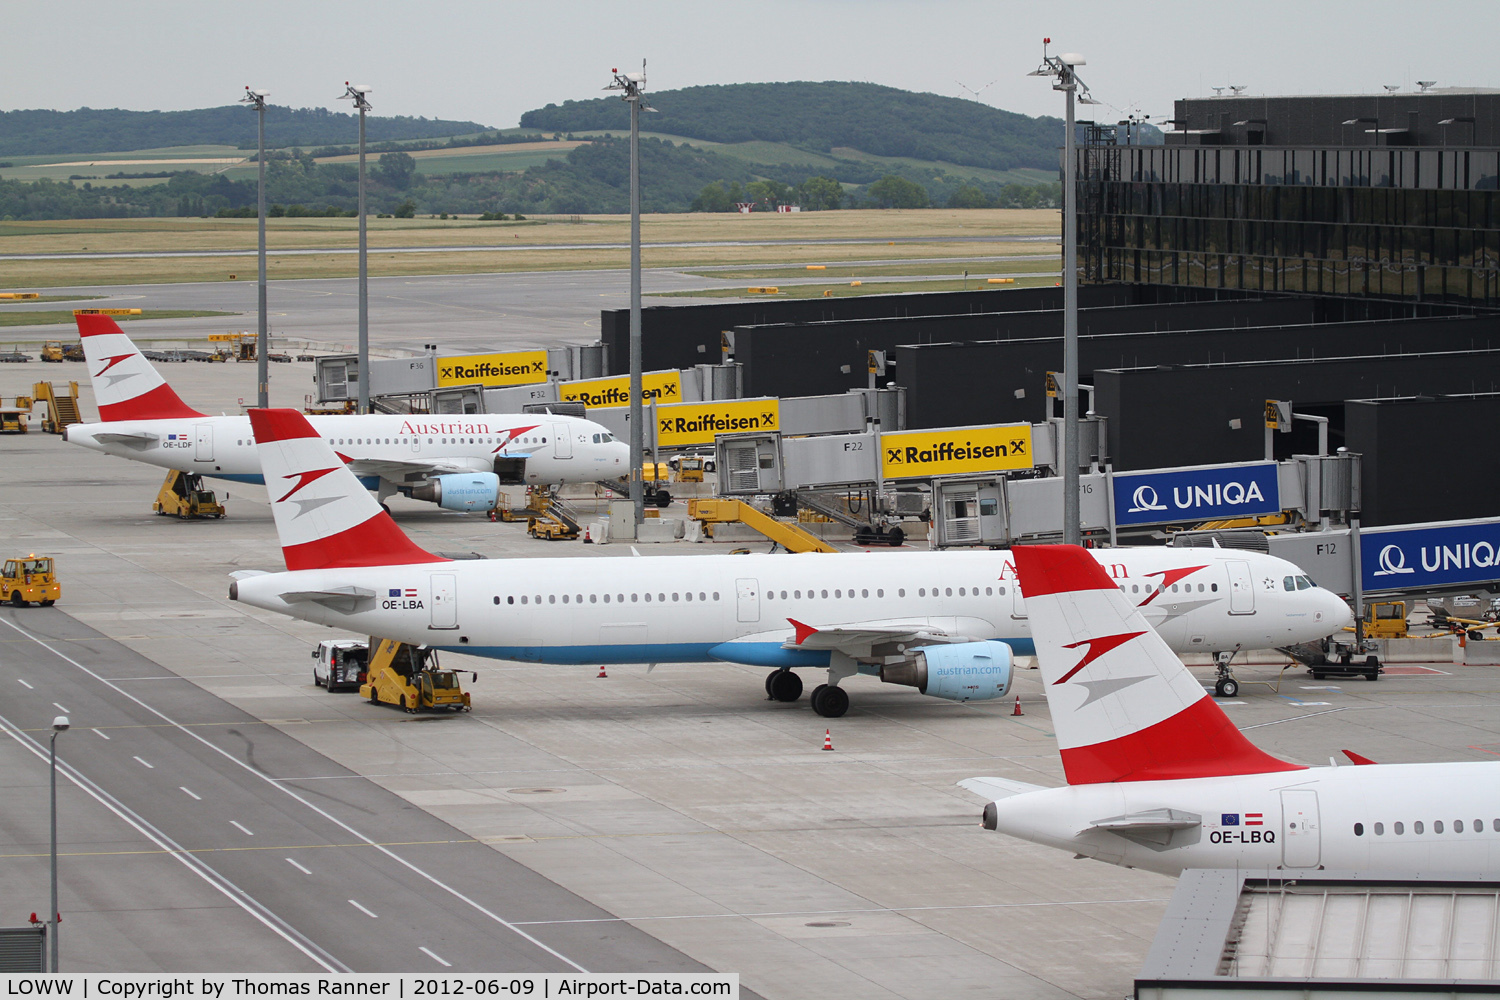 Vienna International Airport, Vienna Austria (LOWW) - Austrians docked at the Checkin-3